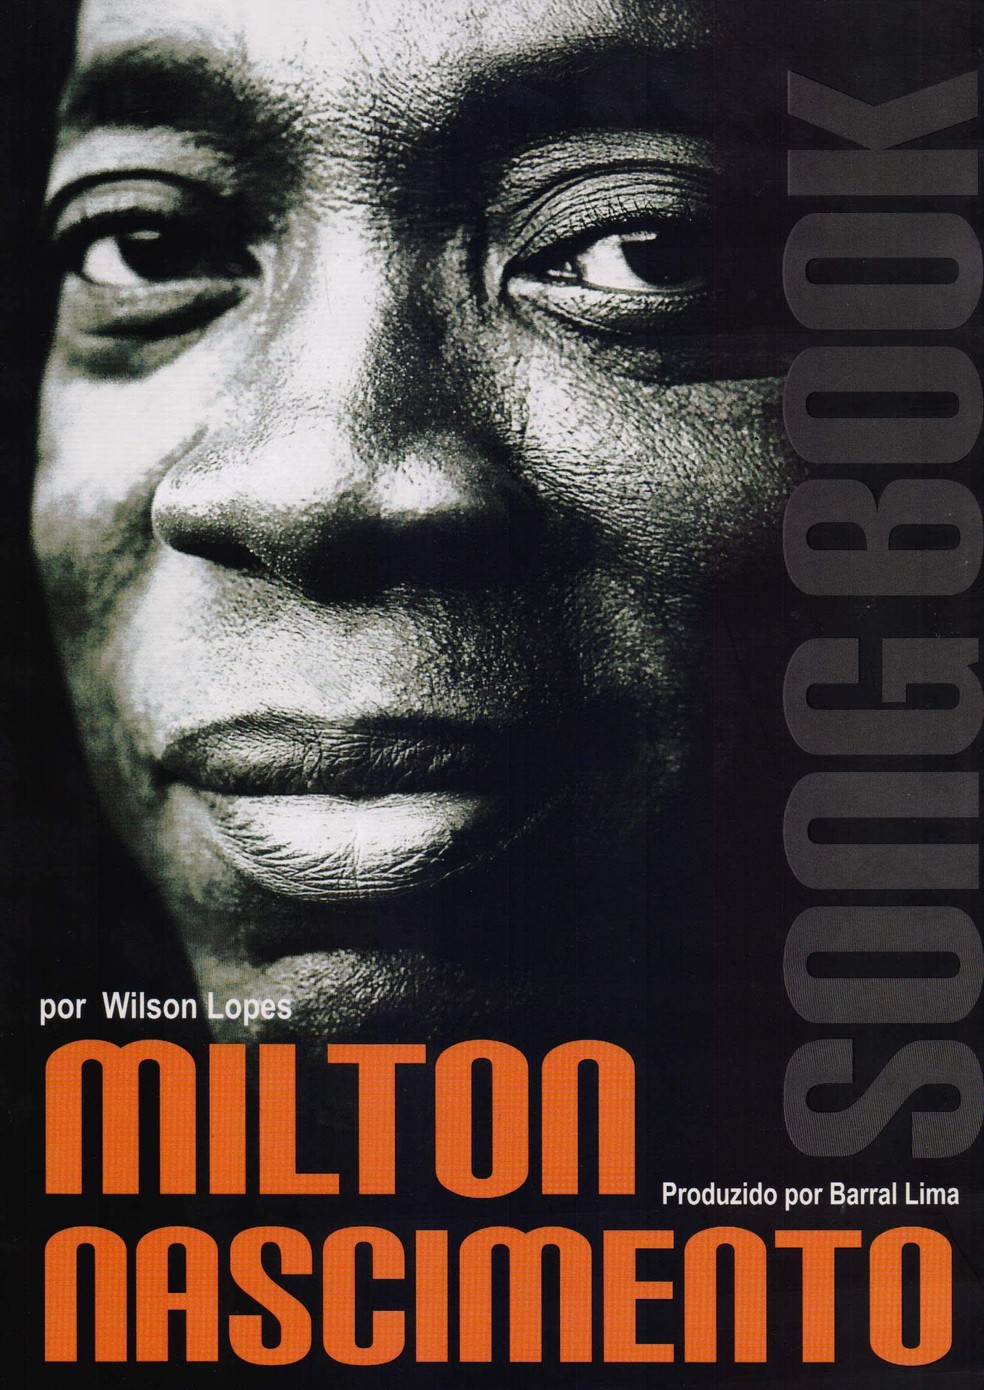 Milton Nascimento. Songbook, à venda na Amazon — Foto: Divulgação